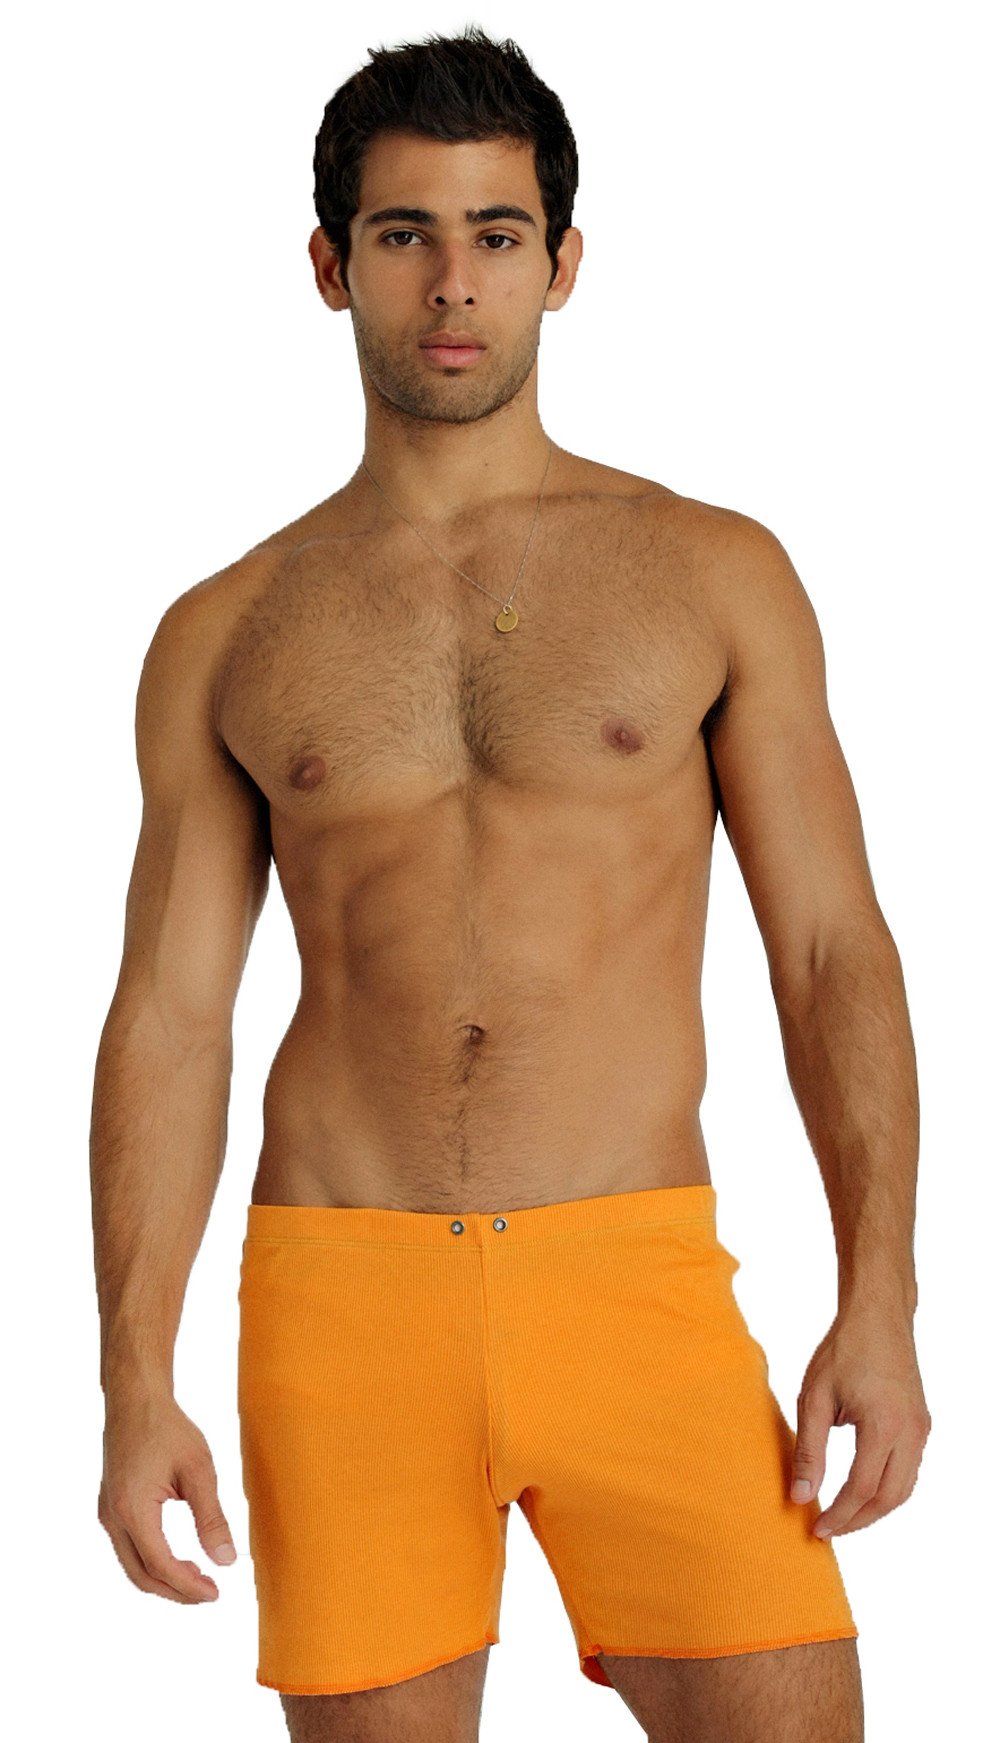 orange hot pants shorts